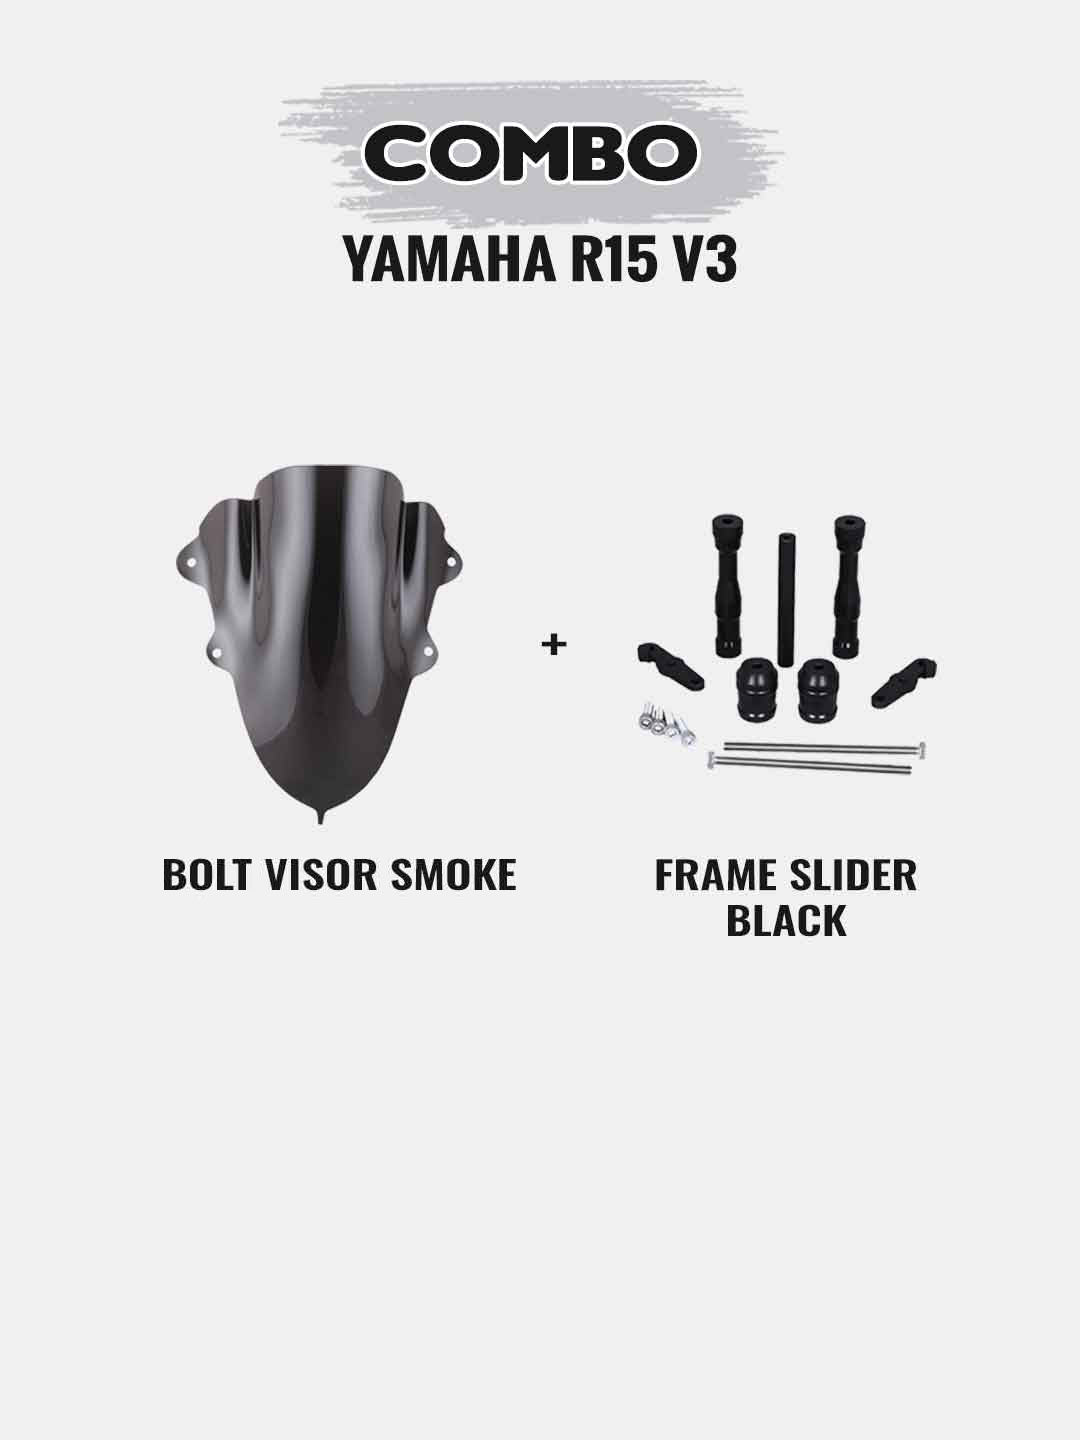 Yamaha R15 V3 Combo - Bolt Visor Smoke + Frame Slider Black